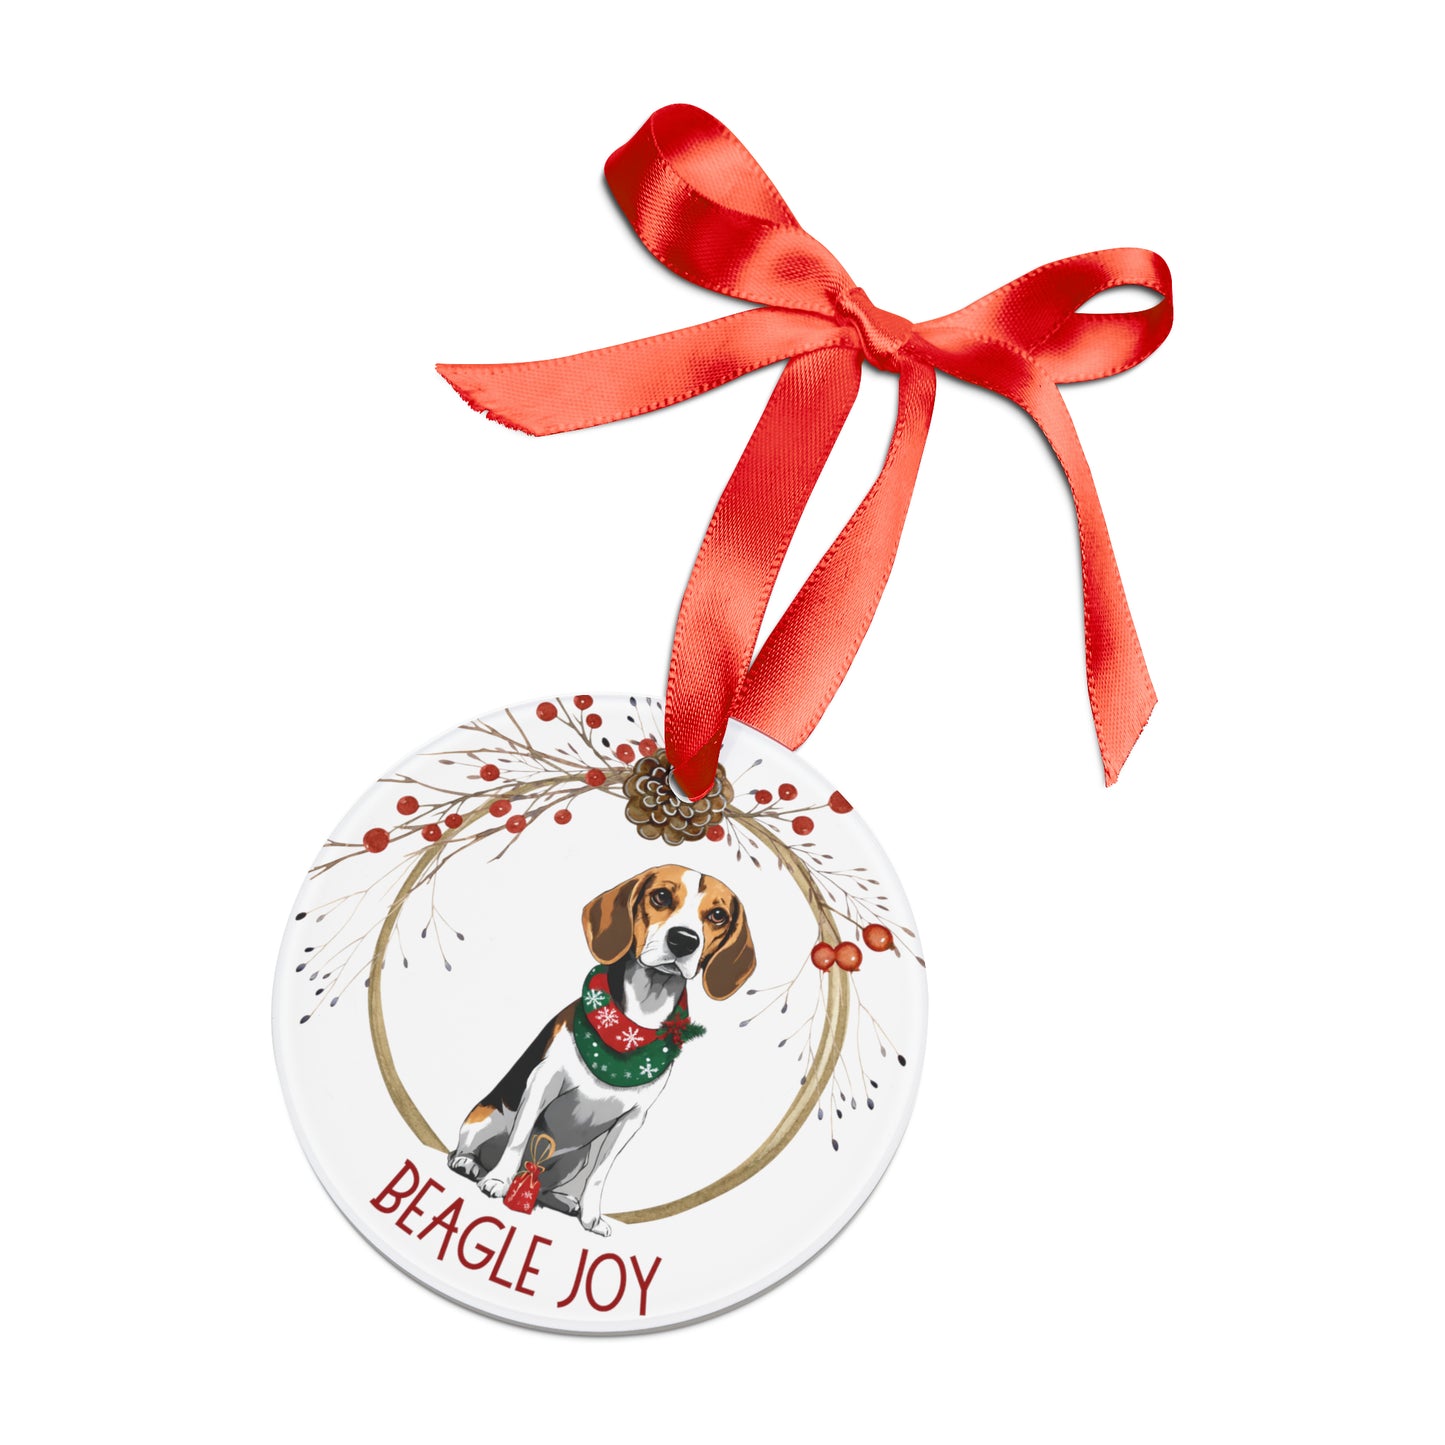 Beagle Joy Holiday Ornament with Ribbon